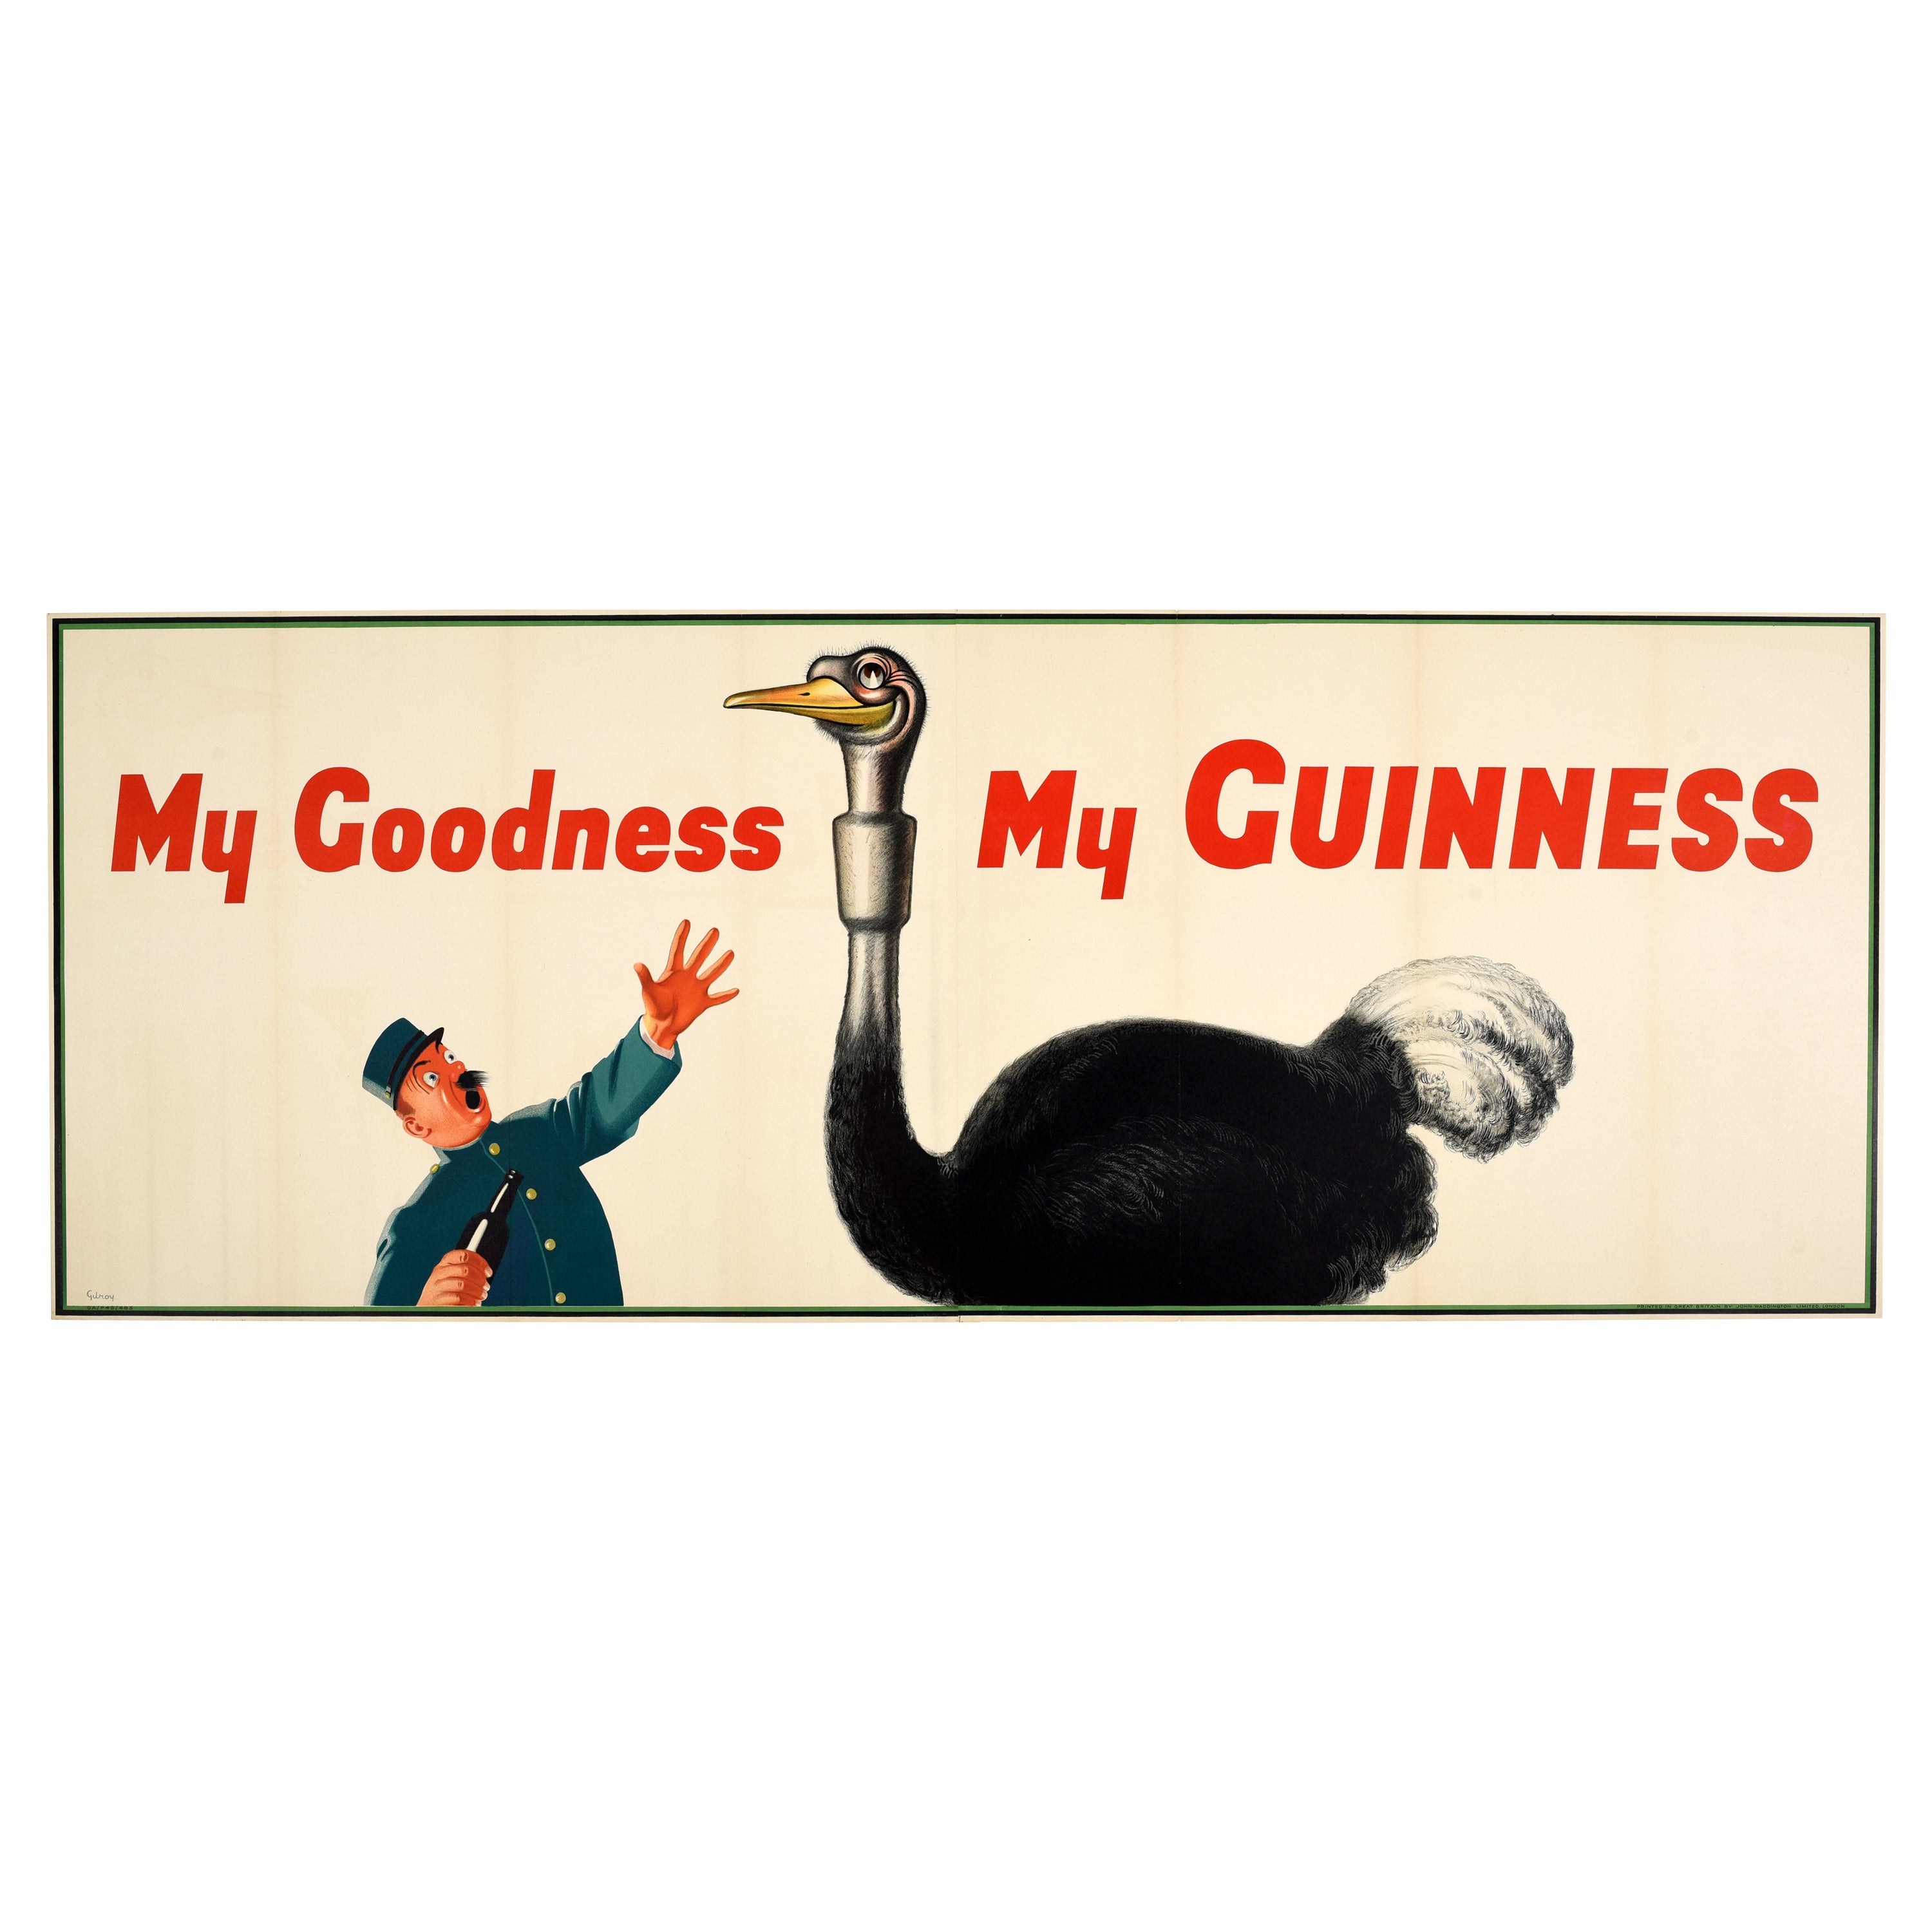 Affiche publicitaire originale vintage pour les boissons - My Goodness My Guinness - Dessin d'autruche